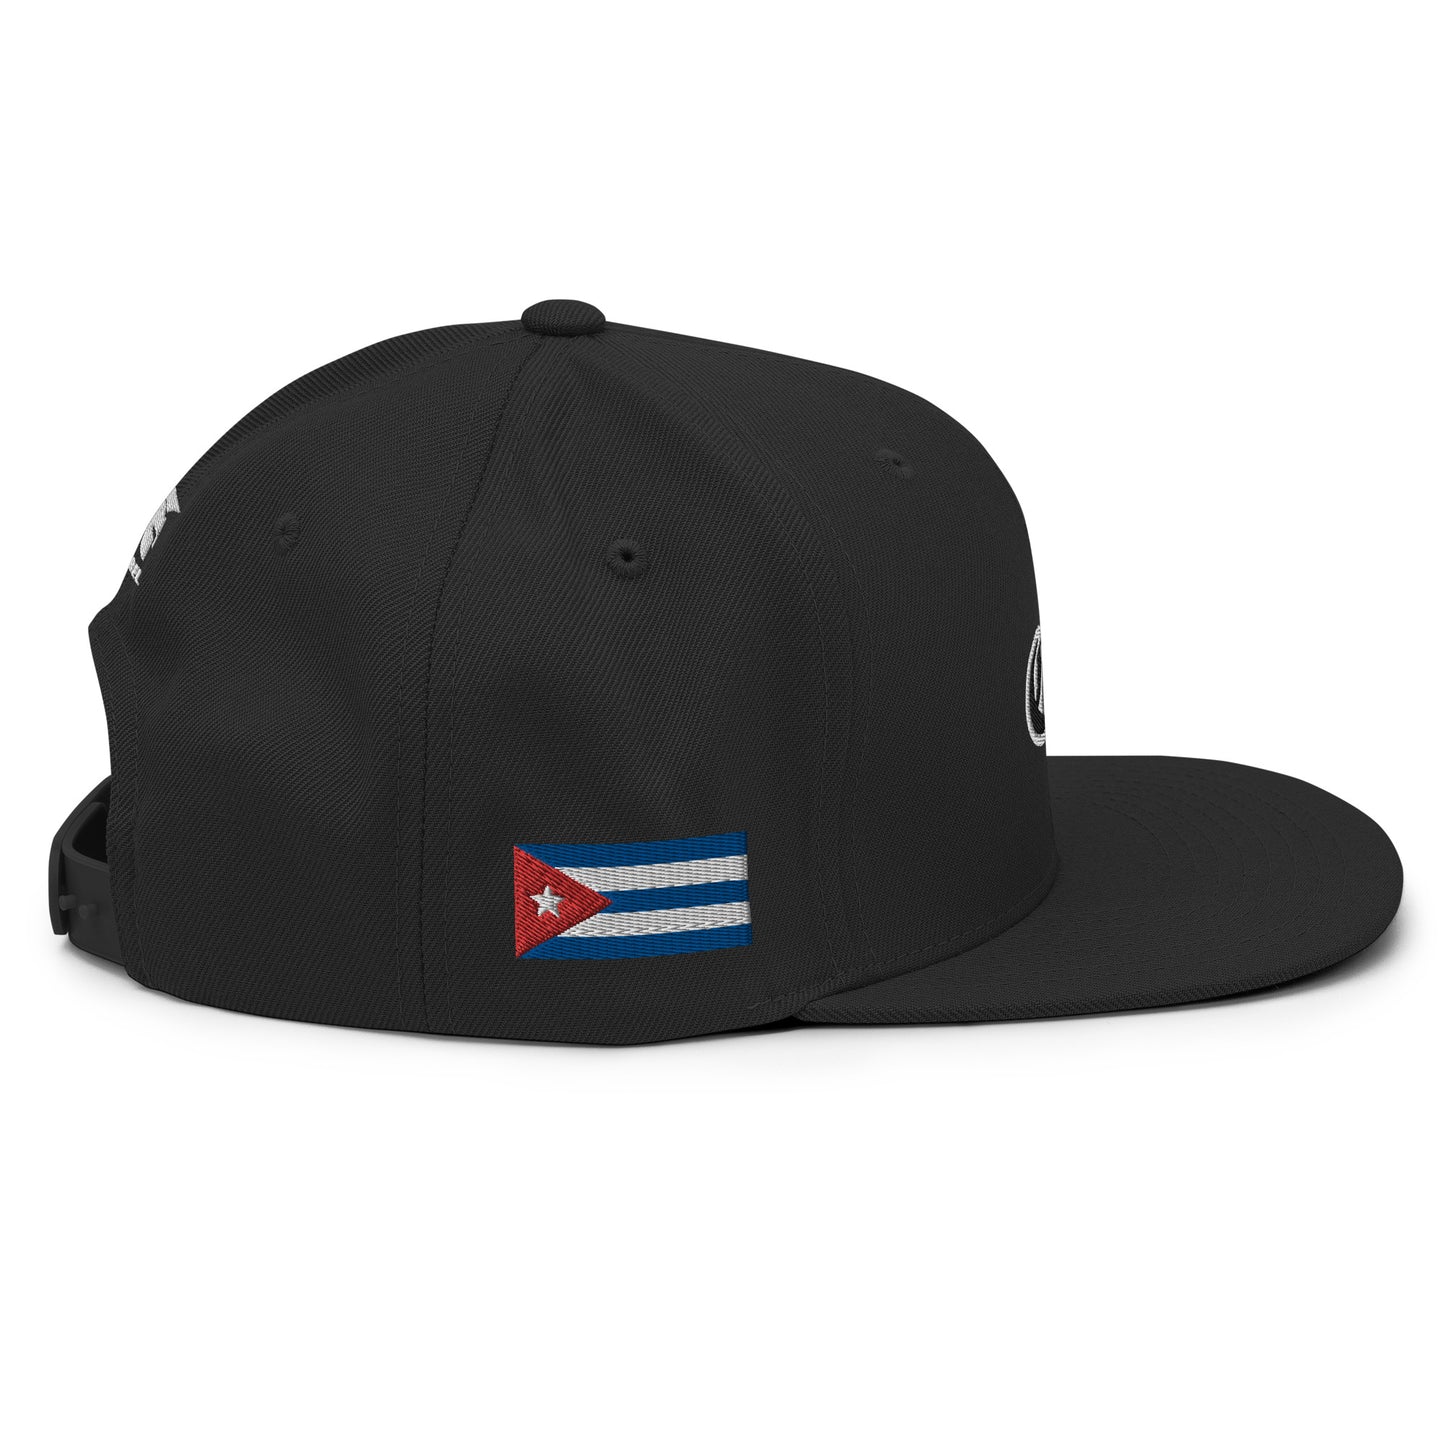 Heritage & Honor Snapback Cap 'Cuba'